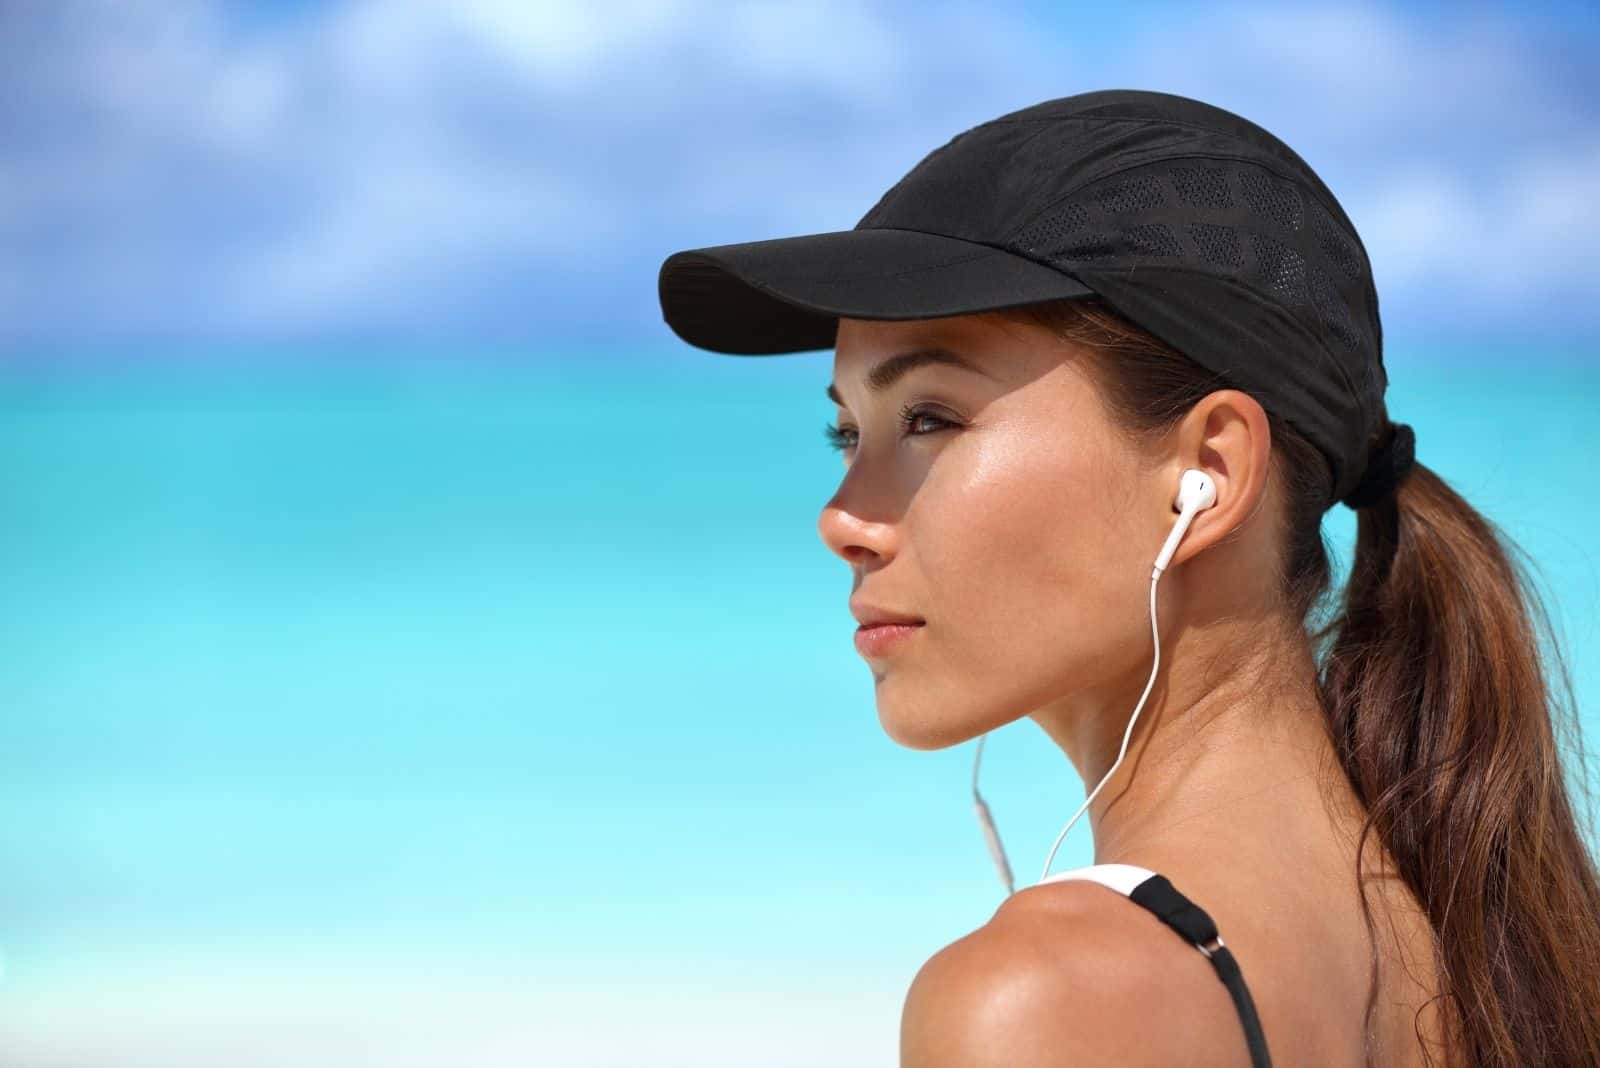 fitness runner ragazza che ascolta la musica con gli auricolari indossando un berretto all'aperto fotografia a fuoco